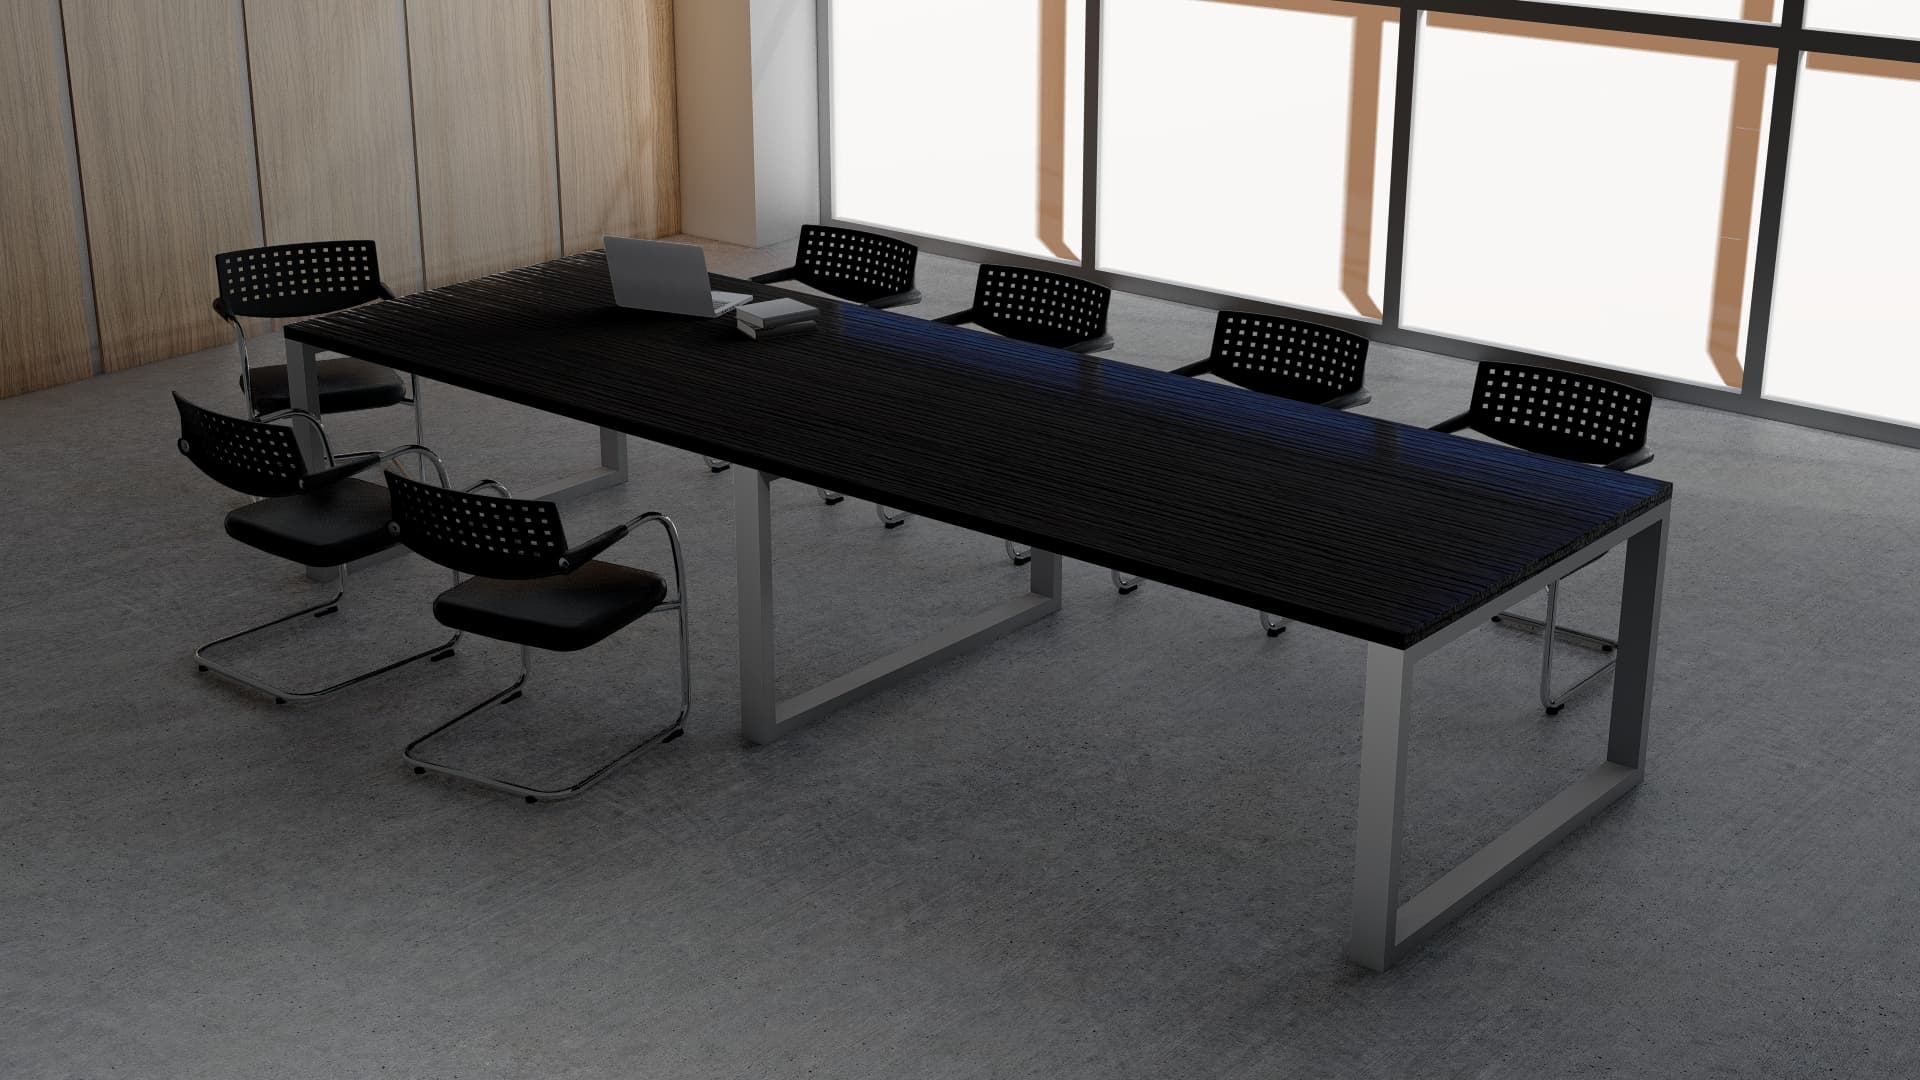 Овальный стол для переговоров на 16 человек